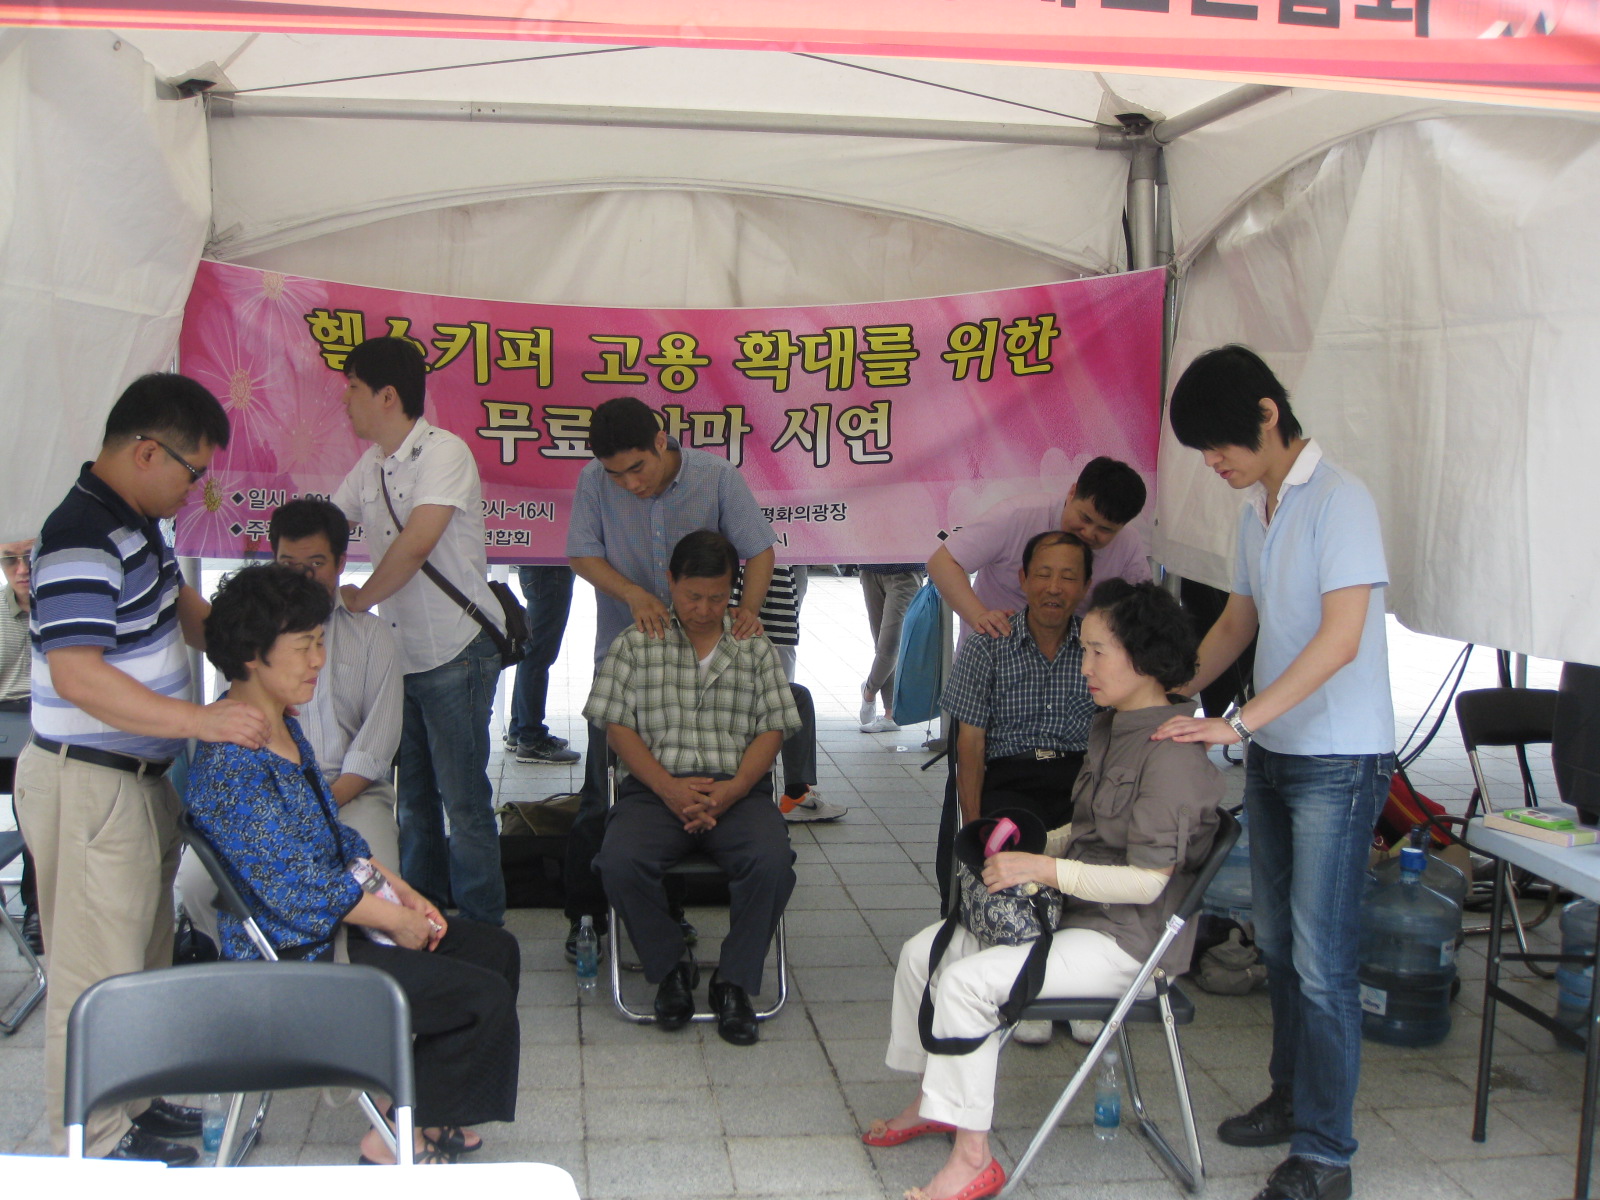 서울시 희망취업박람회(올림픽공원) 무료안마시연 행사